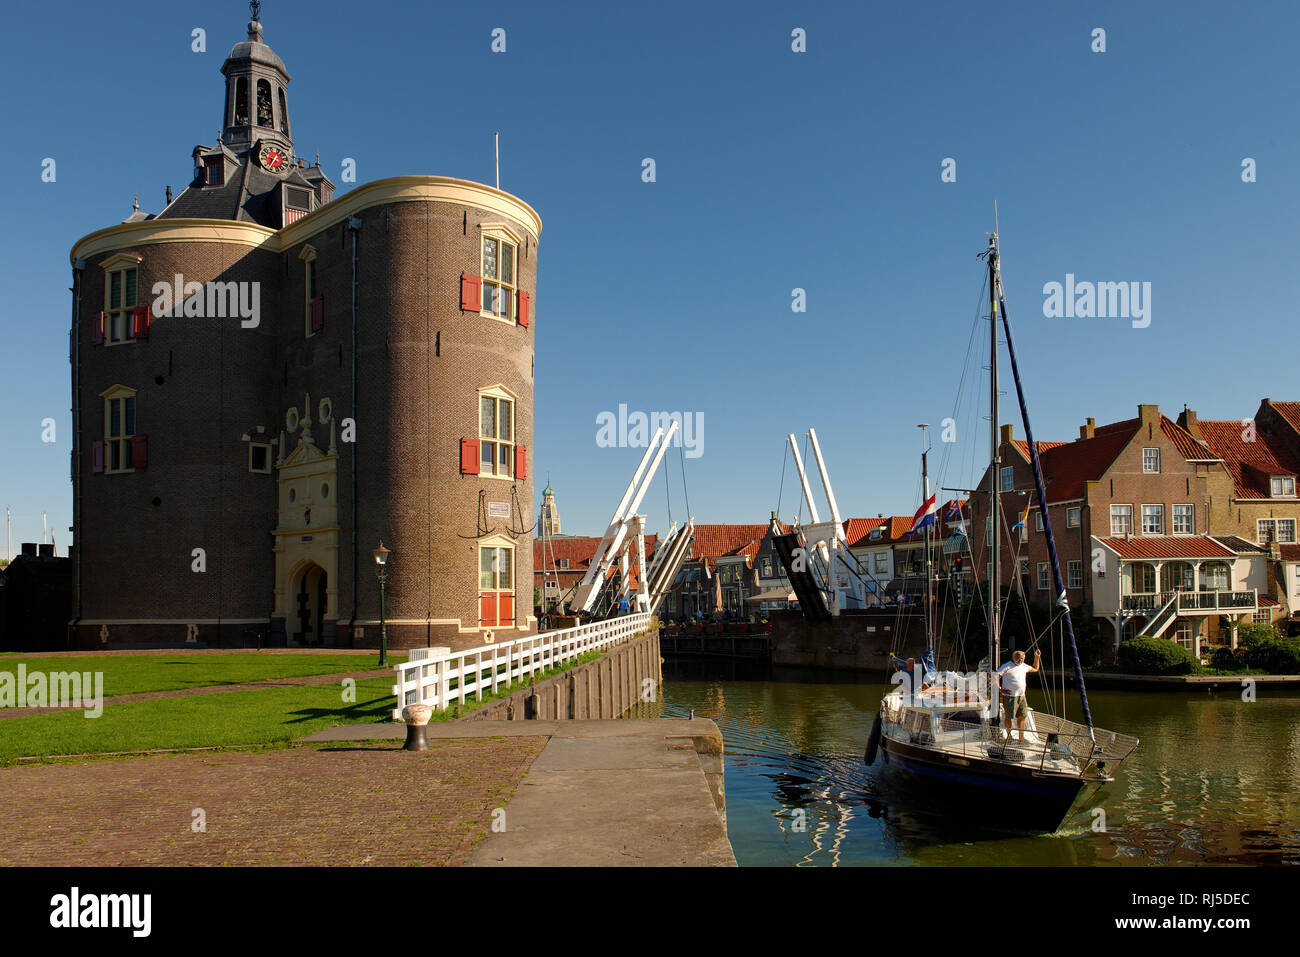 Hafen von Enkhuizen mit Blick auf den Verteidigungsturm Dromedaris, Noord-Holland, Ijsselmeer, Niederlande Stock Photo